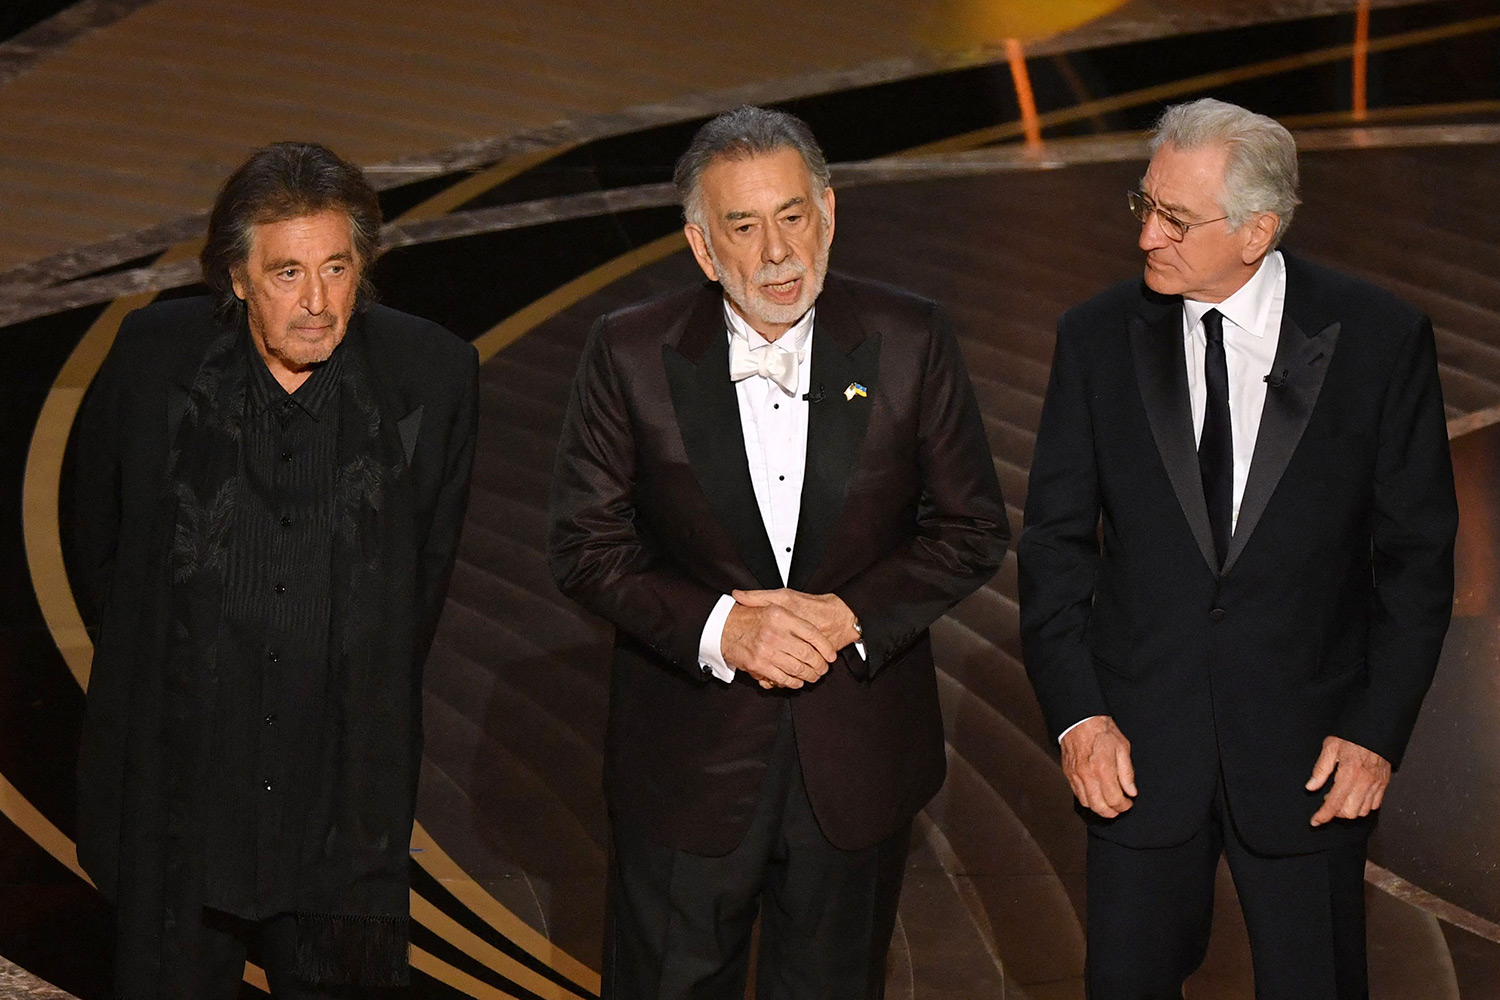 Foto do elenco de O Poderoso Chefão no palco do Oscar 2022. Na foto, vemos 3 homens idosos, todos de terno preto: Al Pacino, Francis Ford Coppola e Robert De Niro.